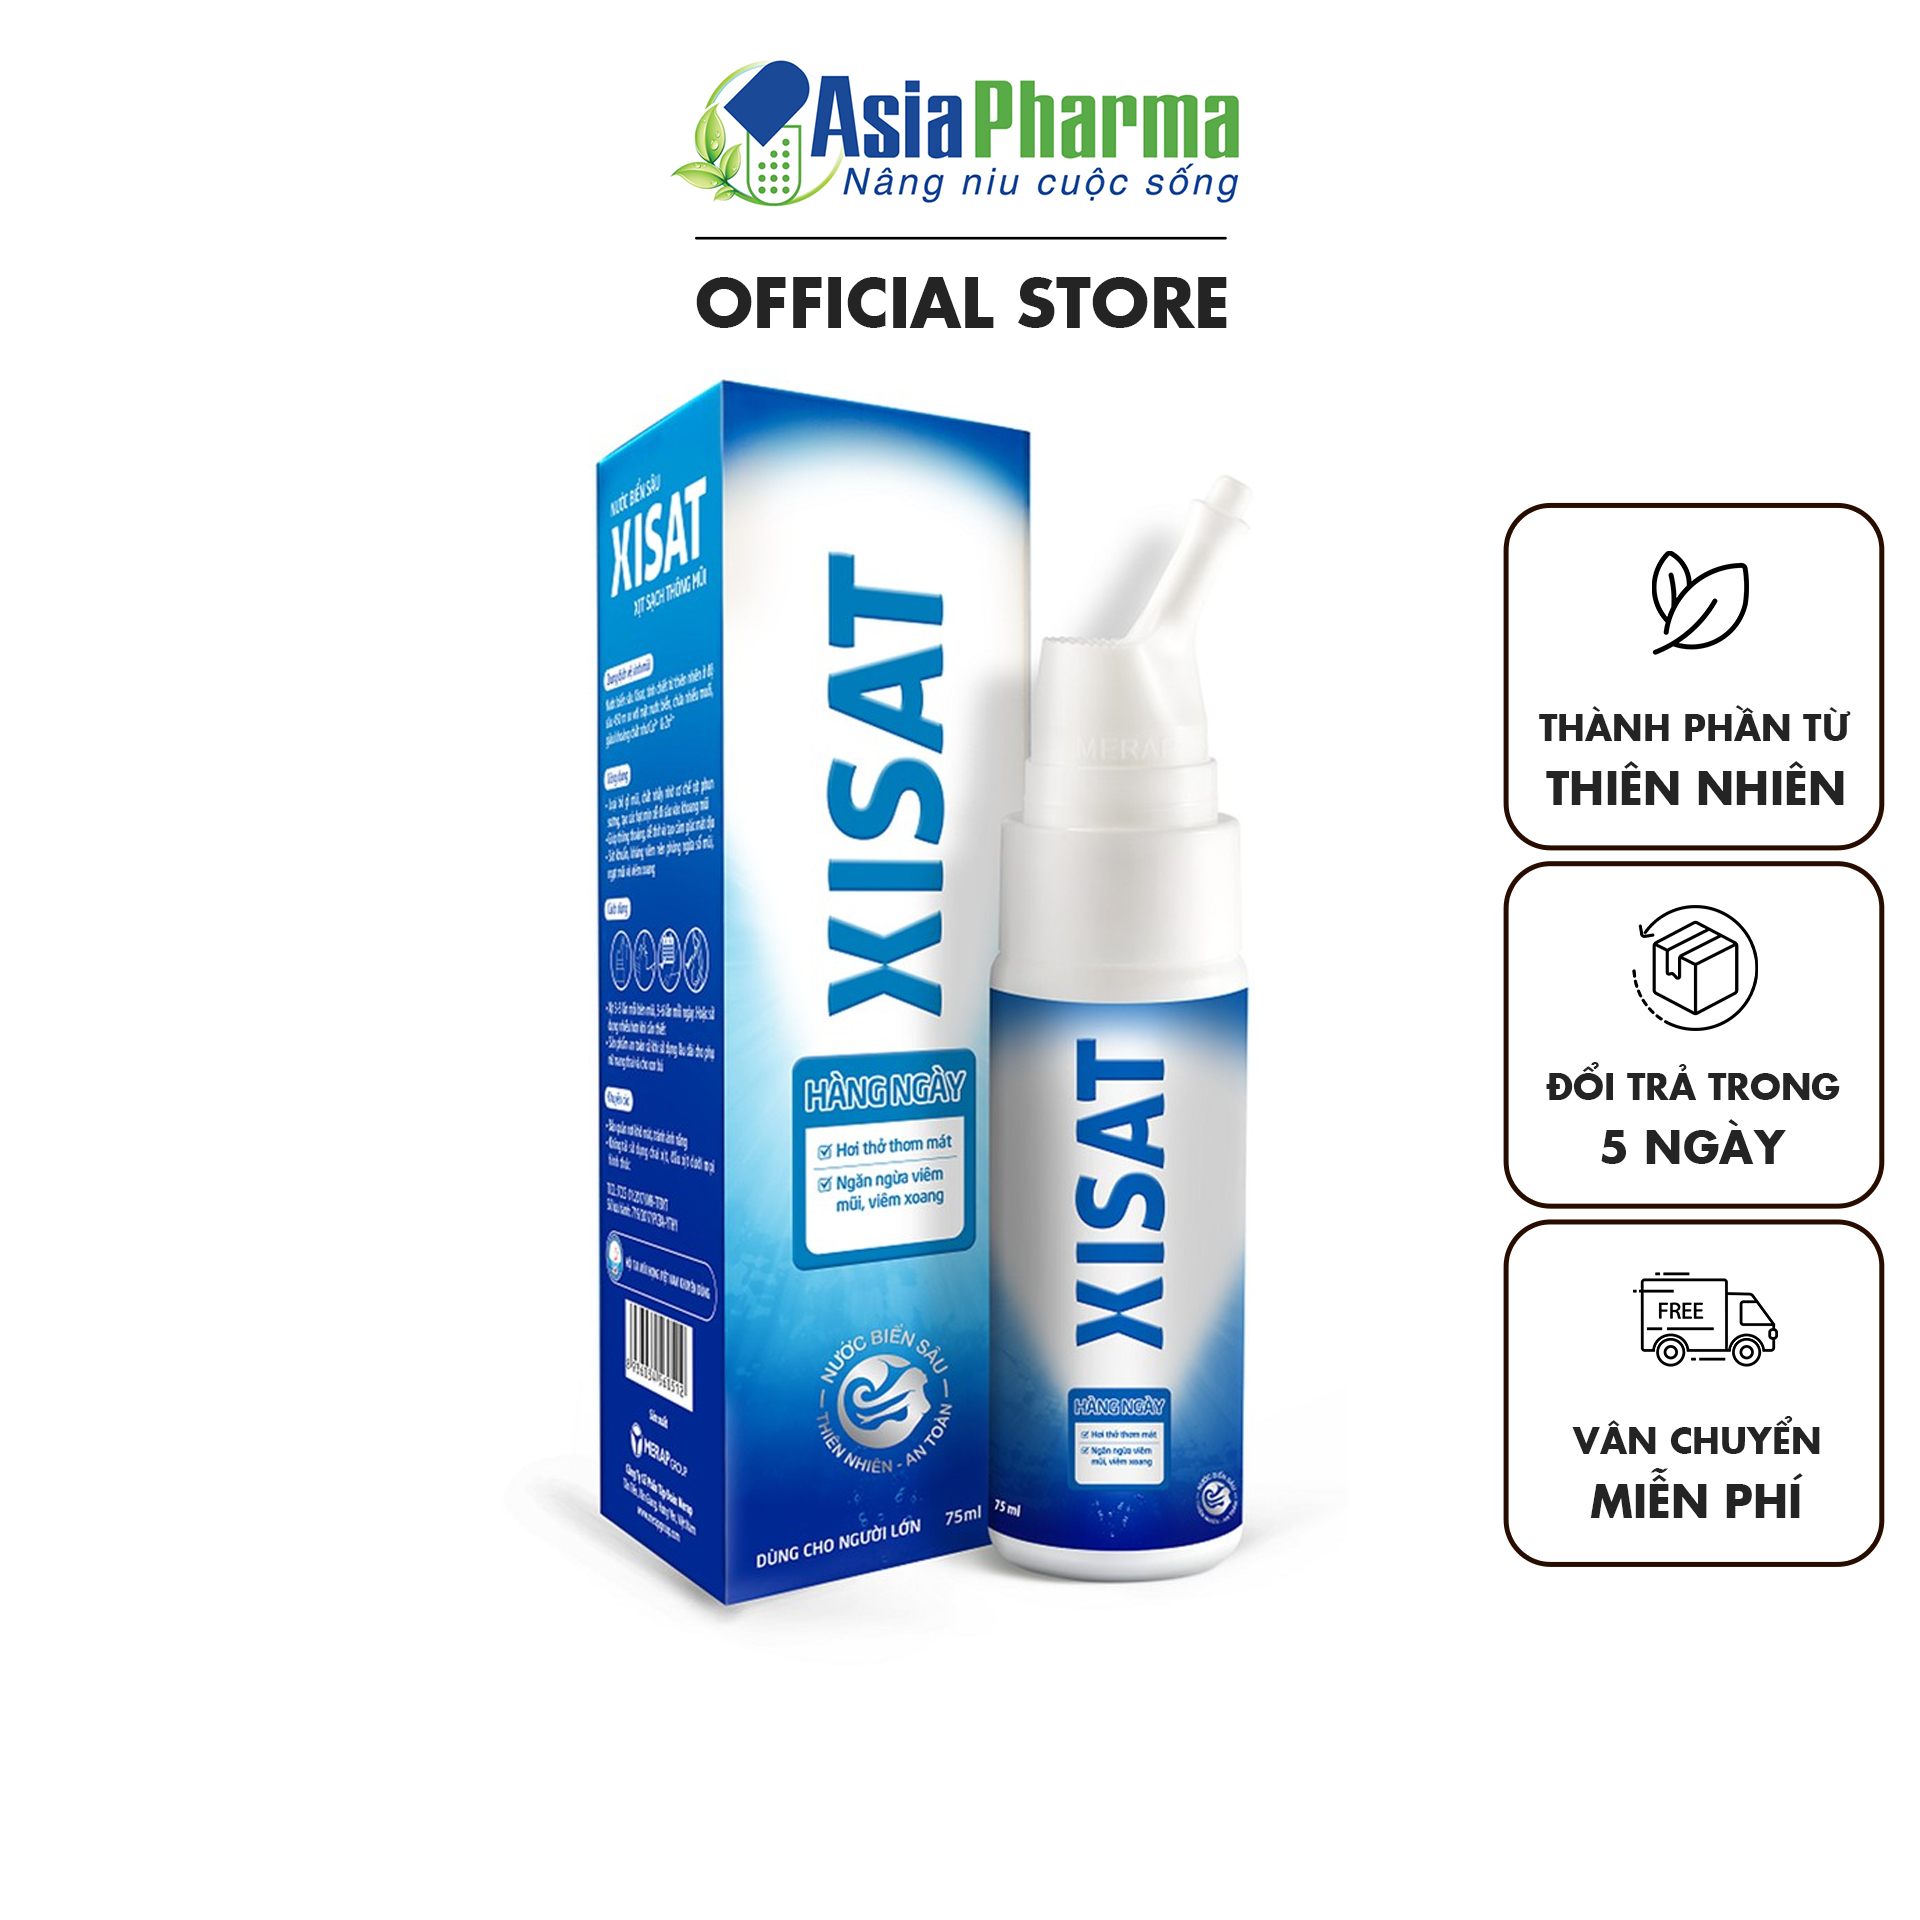 Dung dịch xịt nhỏ rửa mũi XISAT Asia Pharma xanh từ nước biển sâu hỗ trợ